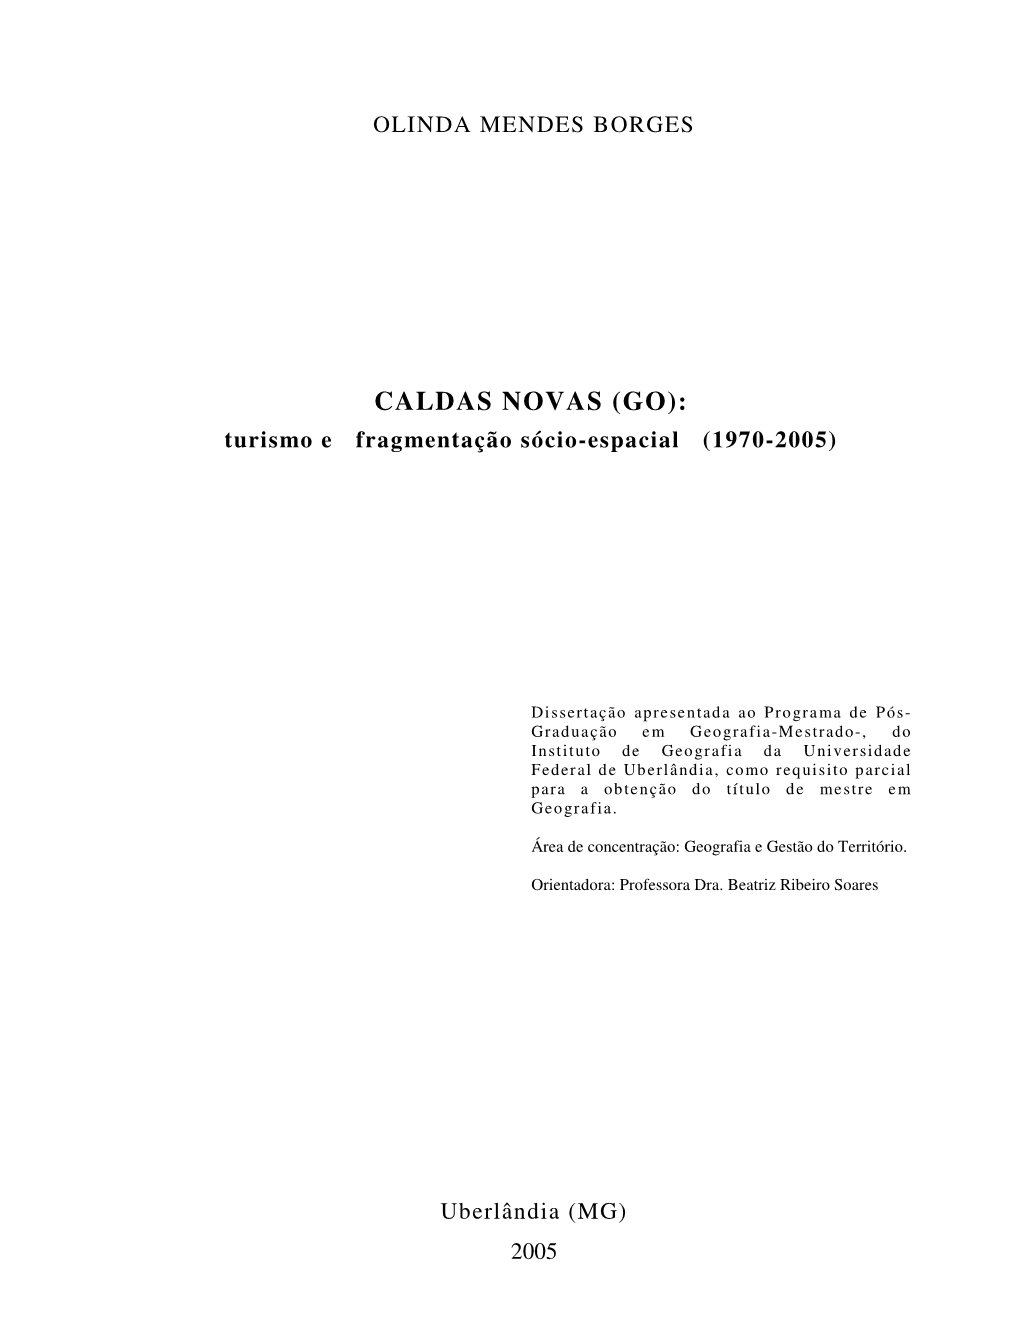 CALDAS NOVAS (GO): Turismo E Fragmentação Sócio-Espacial (1970-2005)